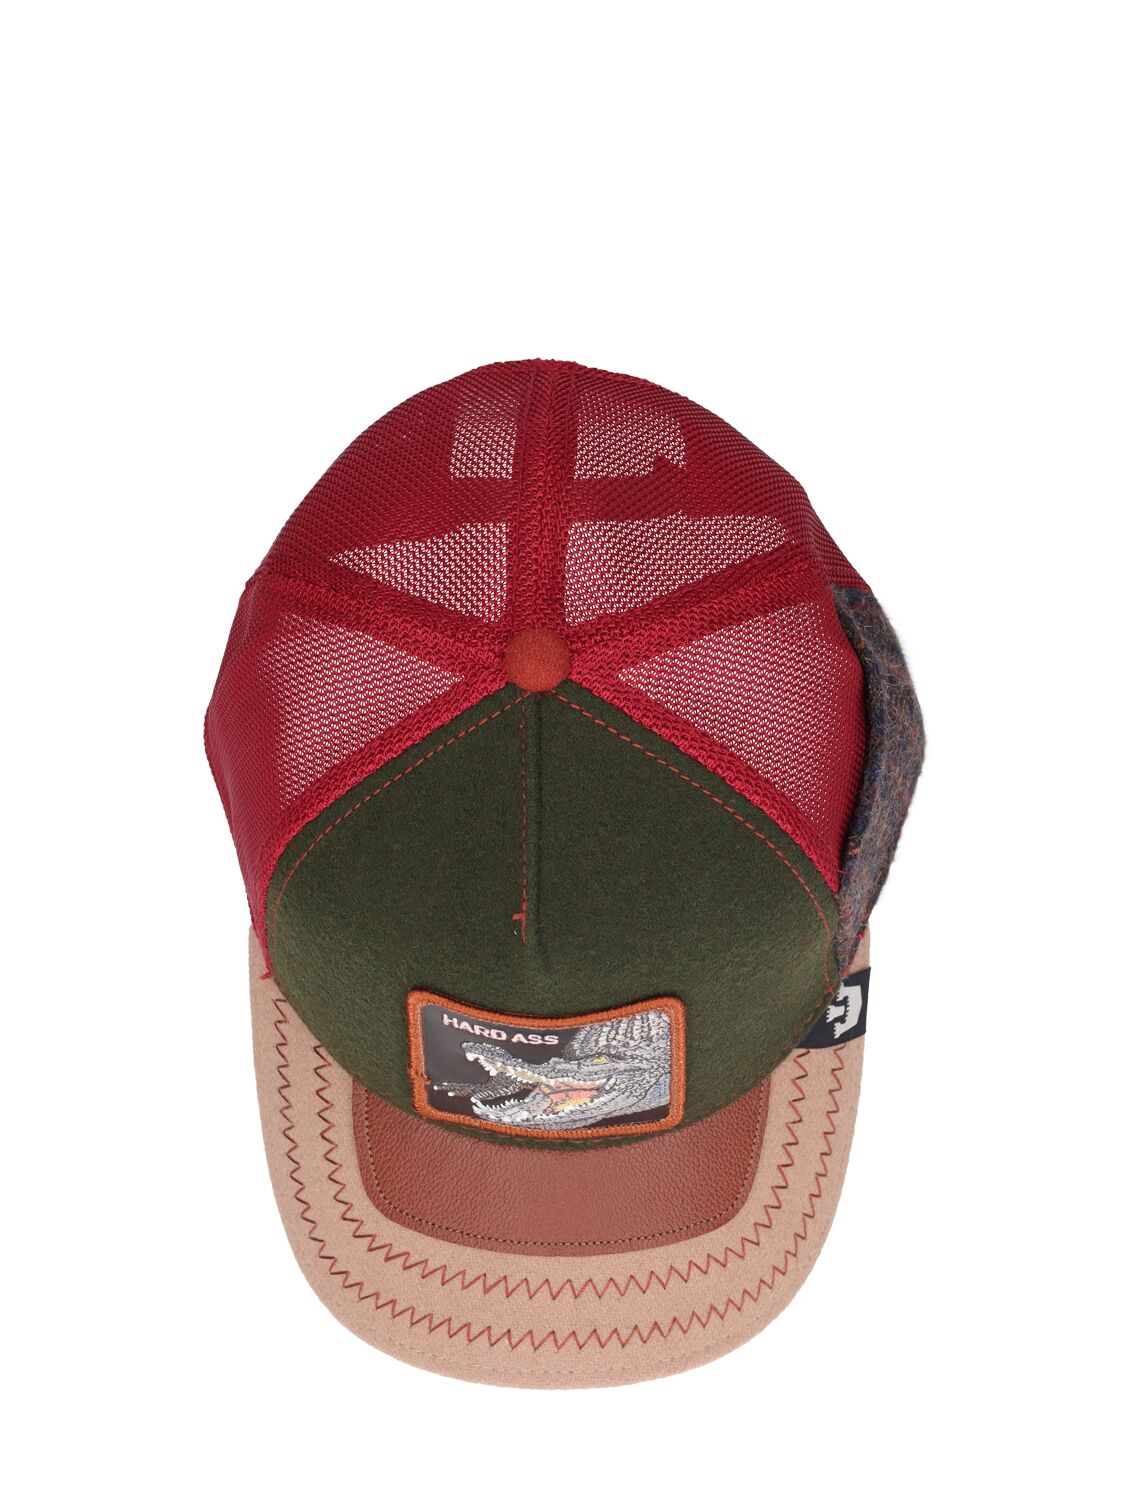 Shop Goorin Bros Trunchbull Trucker Hat In Multicolor